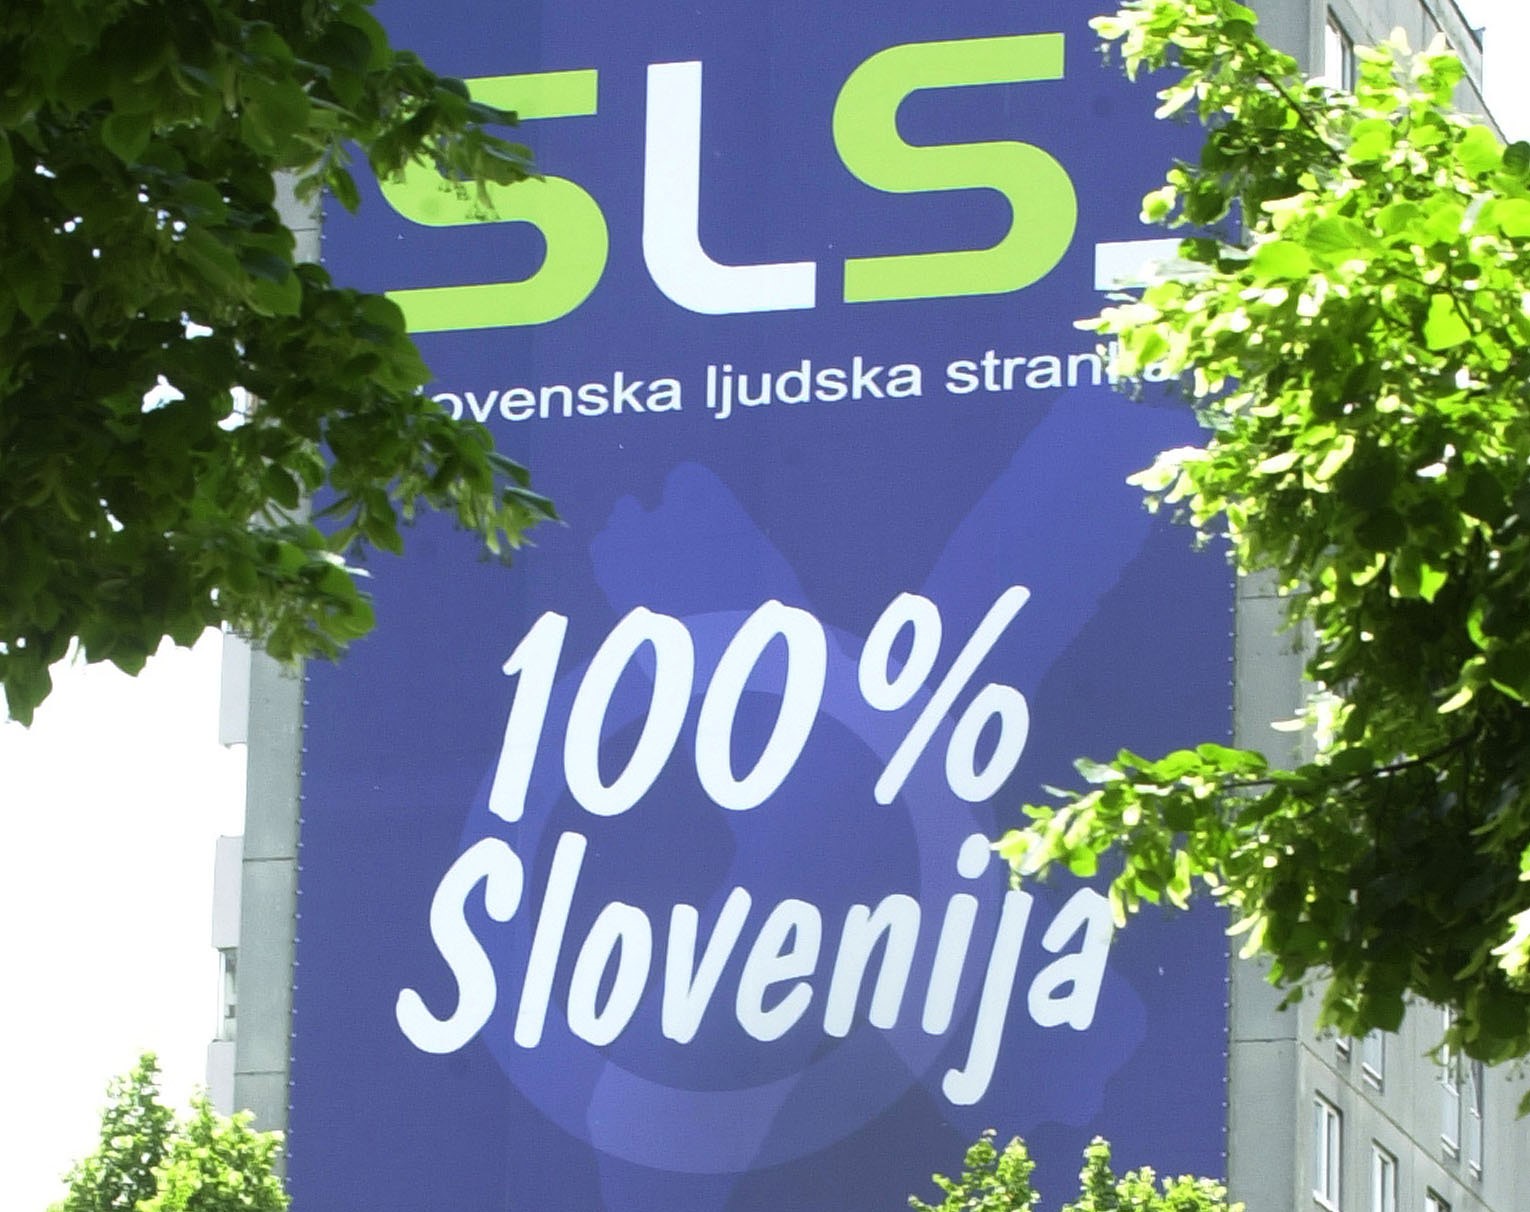 sls, slovenska ljudska stranka